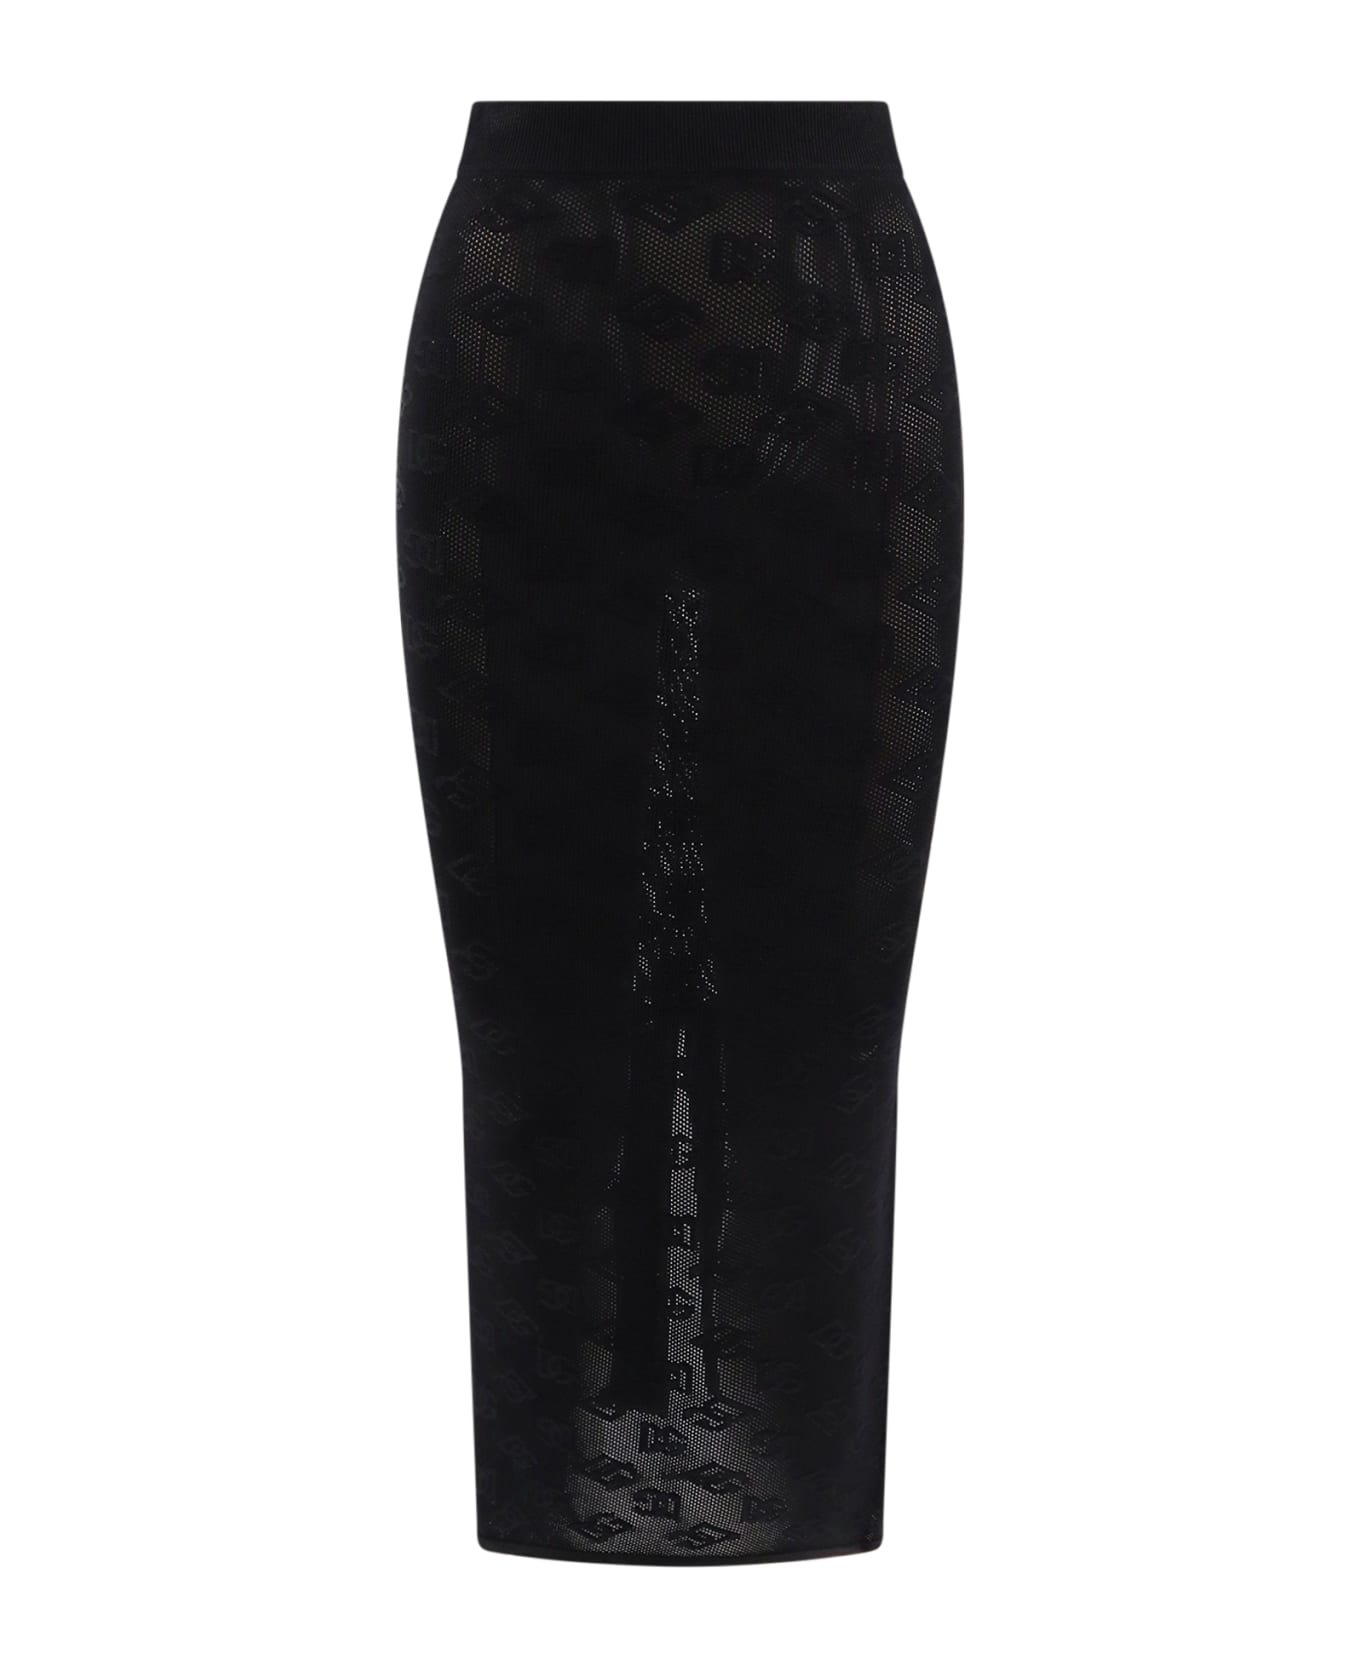 Dolce & Gabbana Dg Skirt - Black スカート